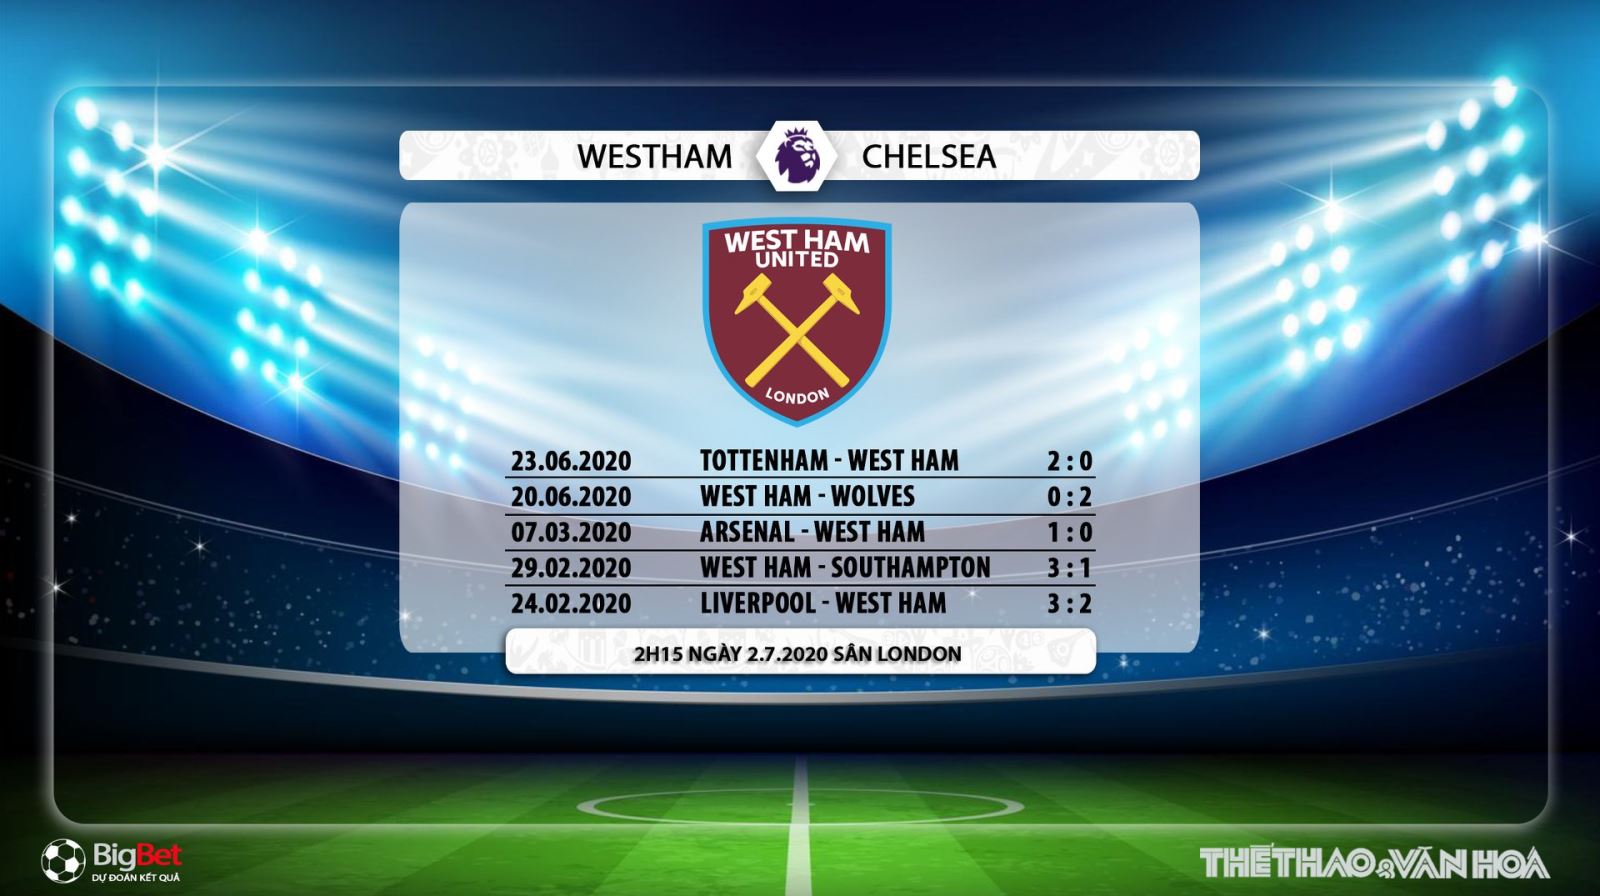 West Ham vs Chelsea, bóng đá, bong da, trực tiếp bóng đá, lịch thi đấu, chelsea, west ham, ngoại hạng anh, bóng đá anh